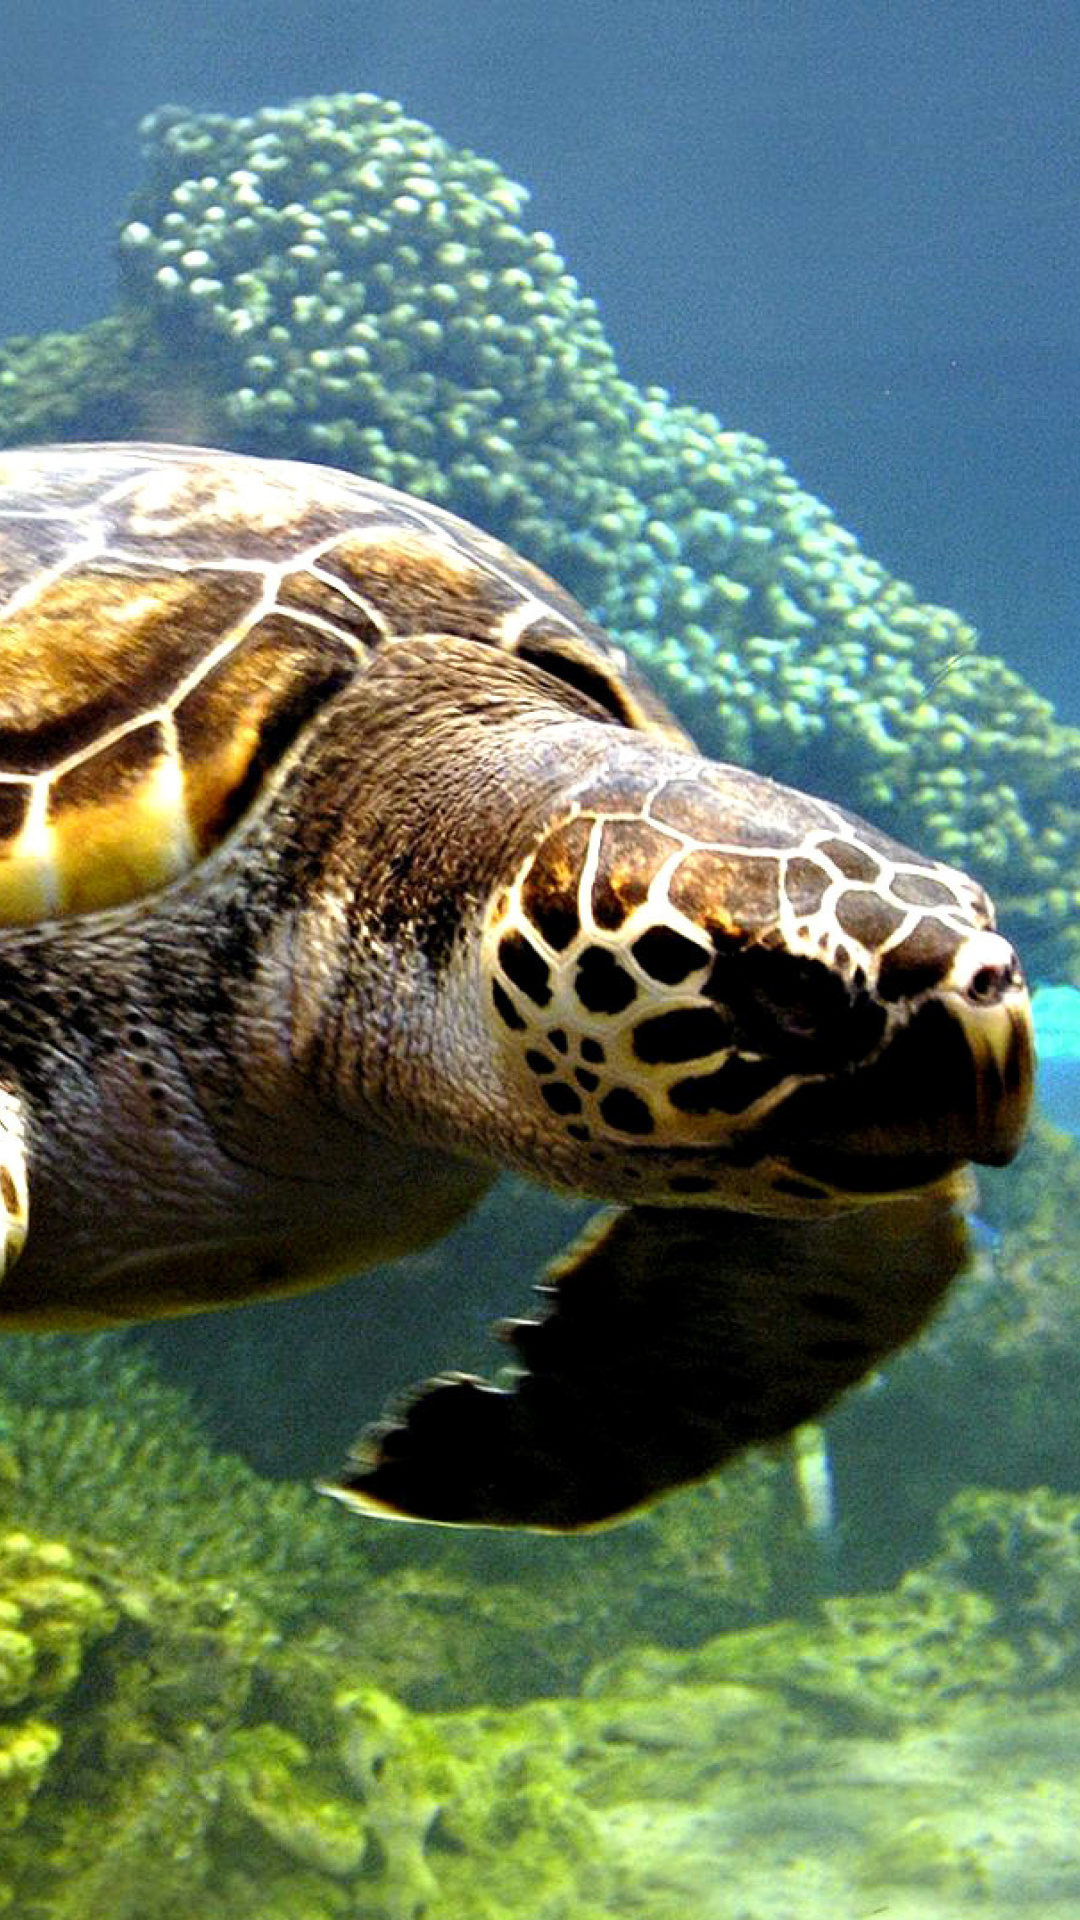 Обои Turtle Snorkeling in Akumal, Mexico 1080x1920